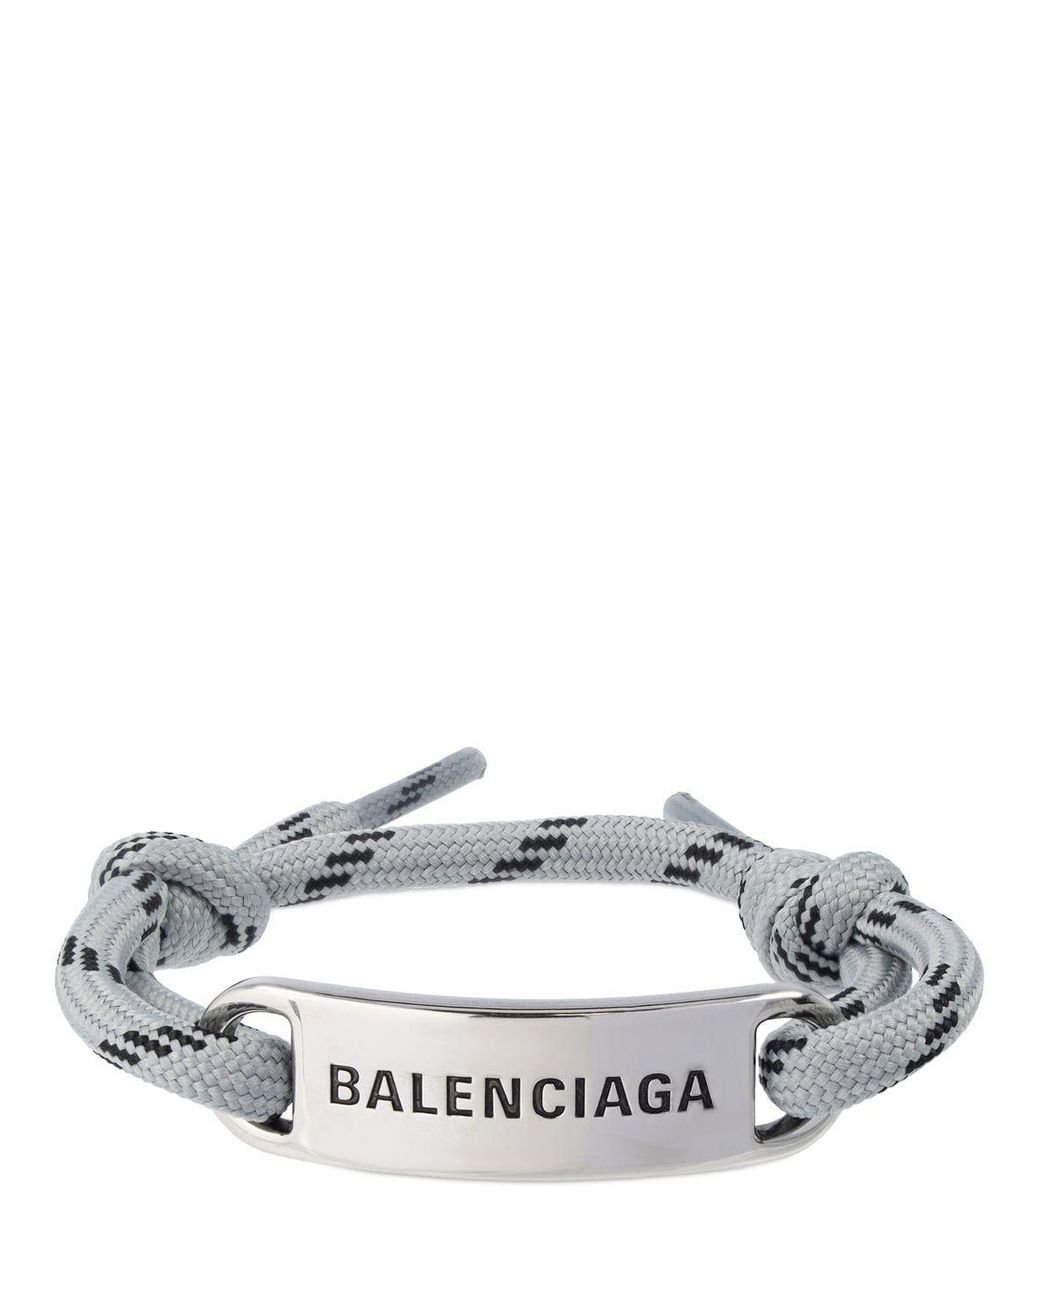 Баленсиага браслет купить. Balenciaga прищепка.